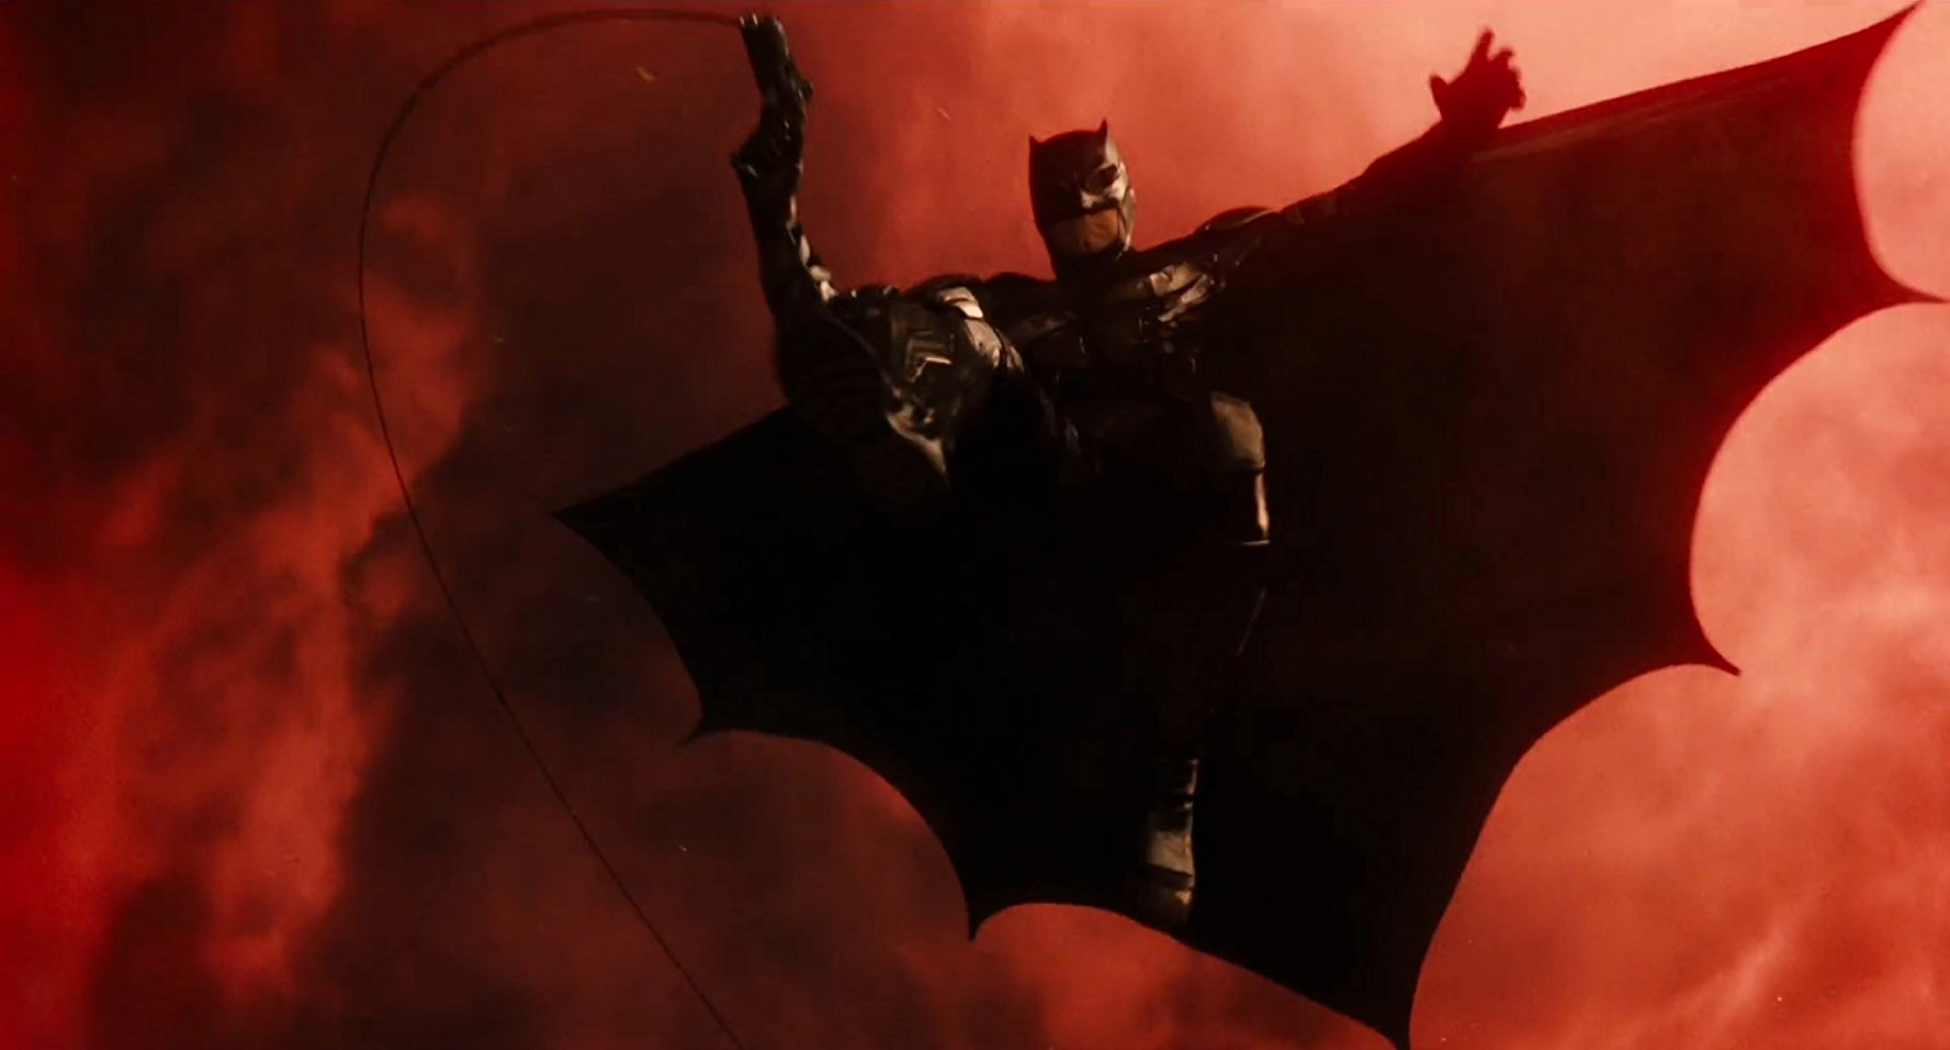 Justice League Batman